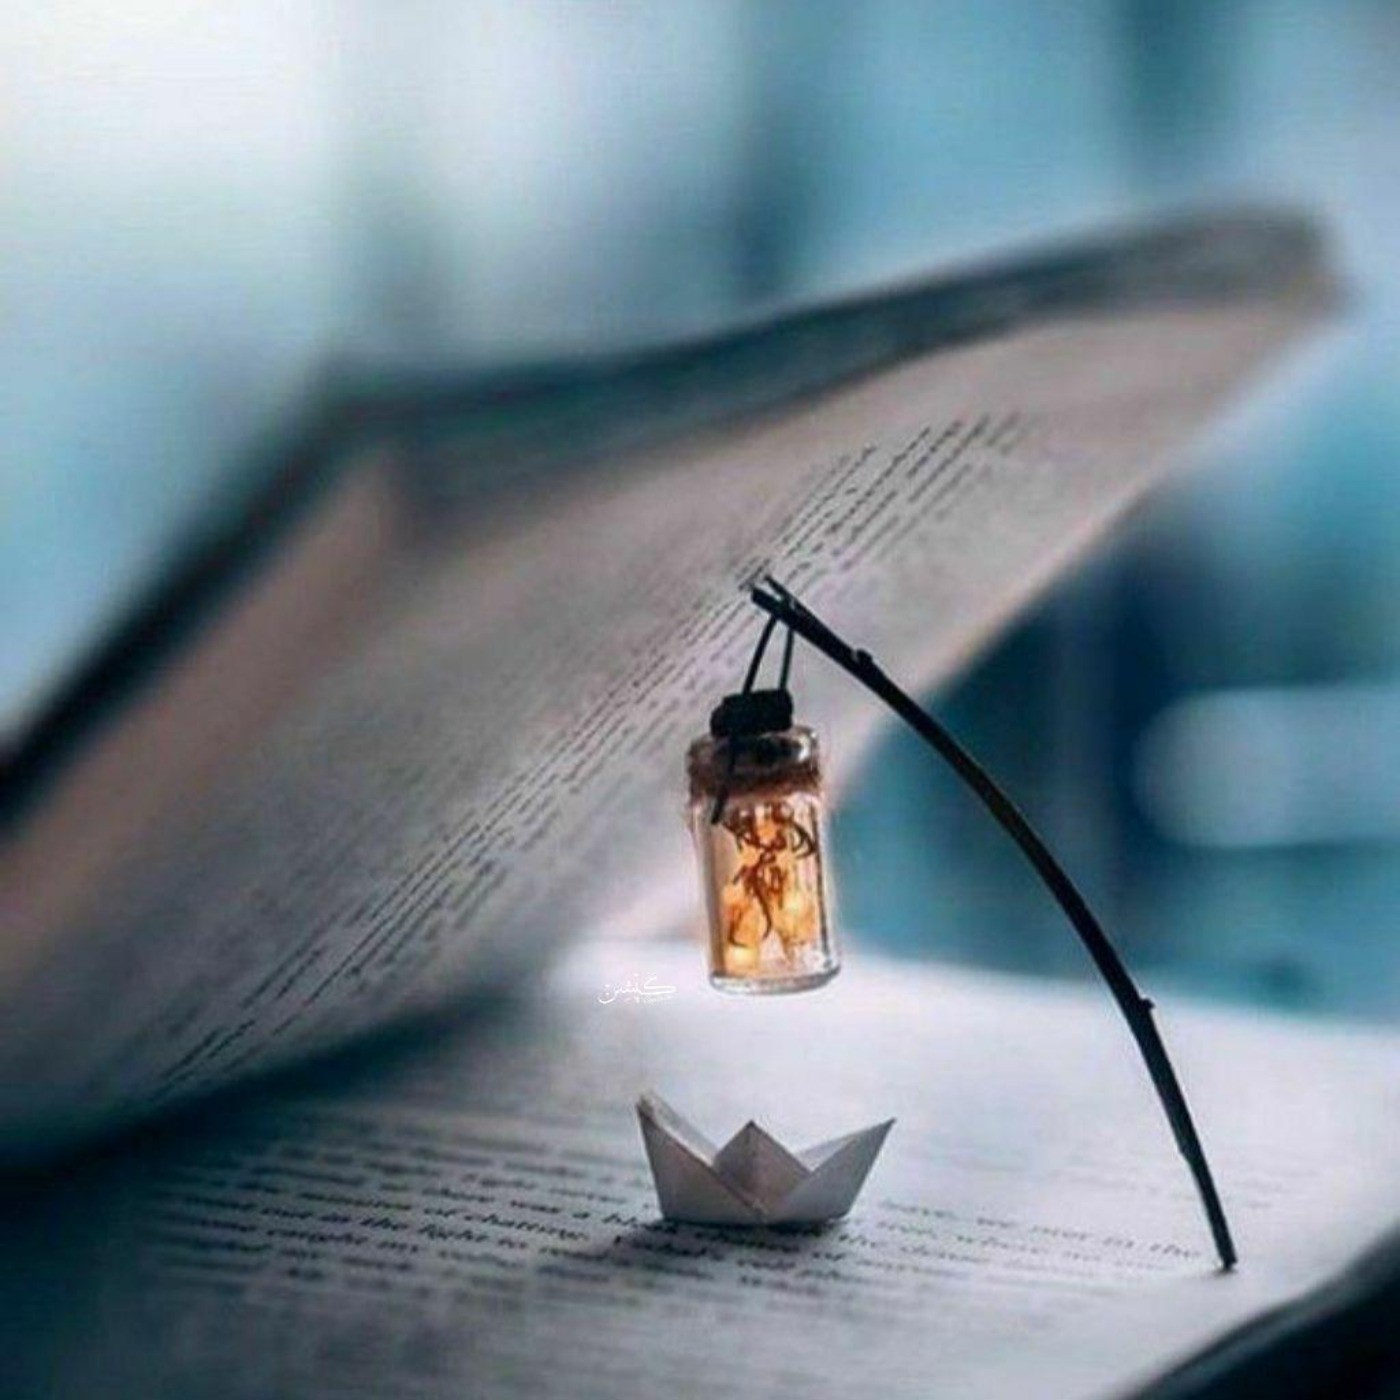 پست هنری زیبا در مورد کتاب و چراغ